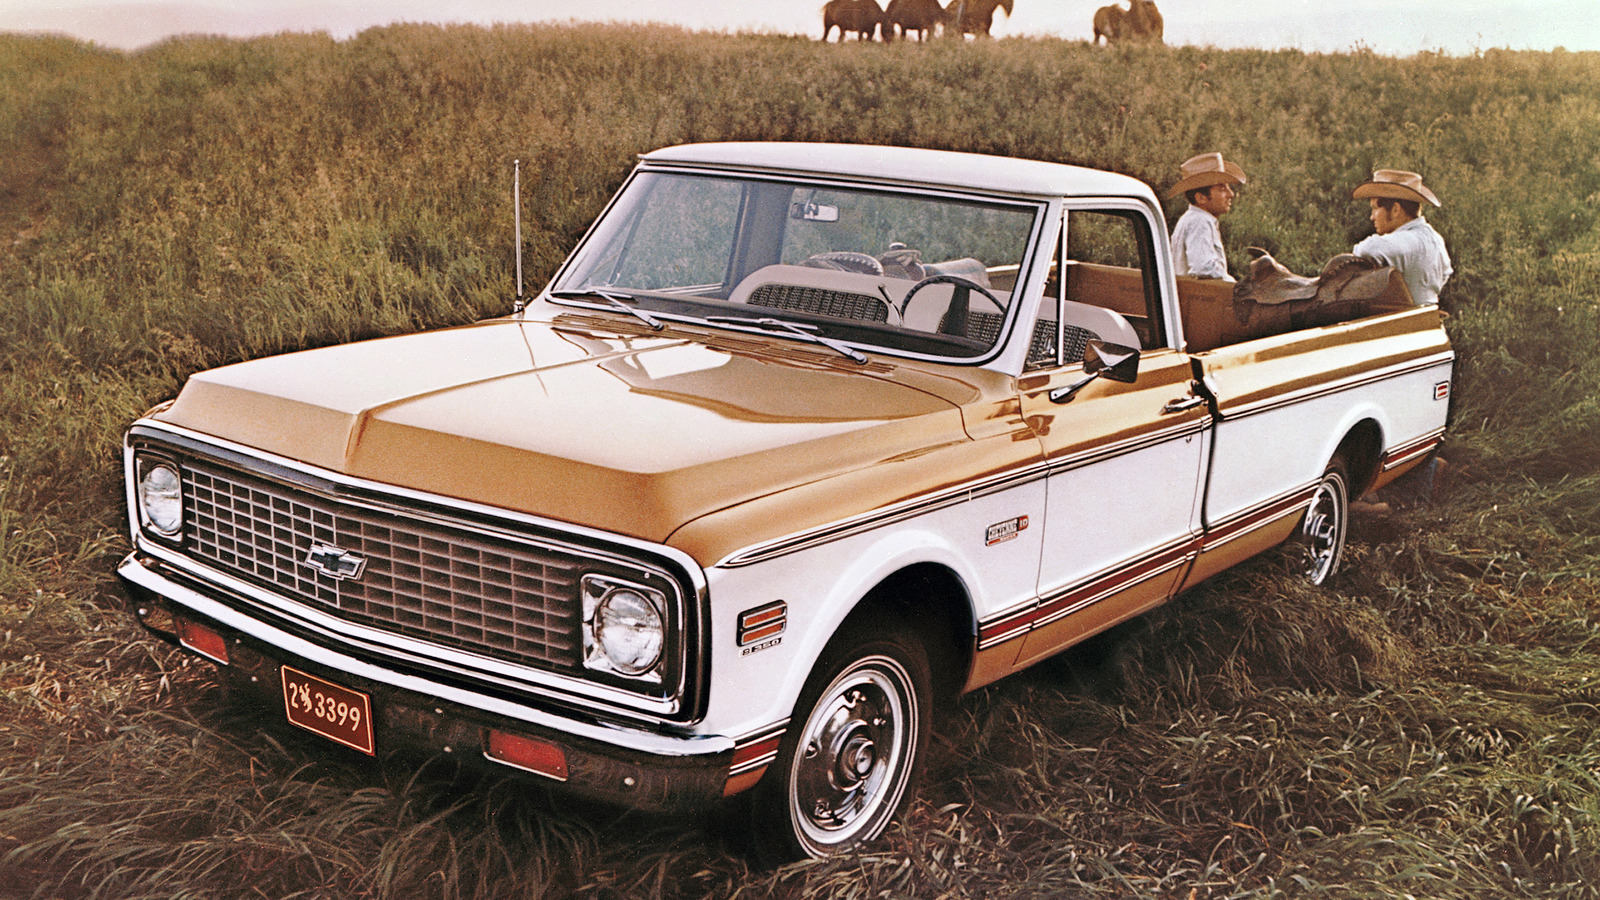 5 camionetas clásicas de los años 70 que serían excelentes camionetas agrícolas